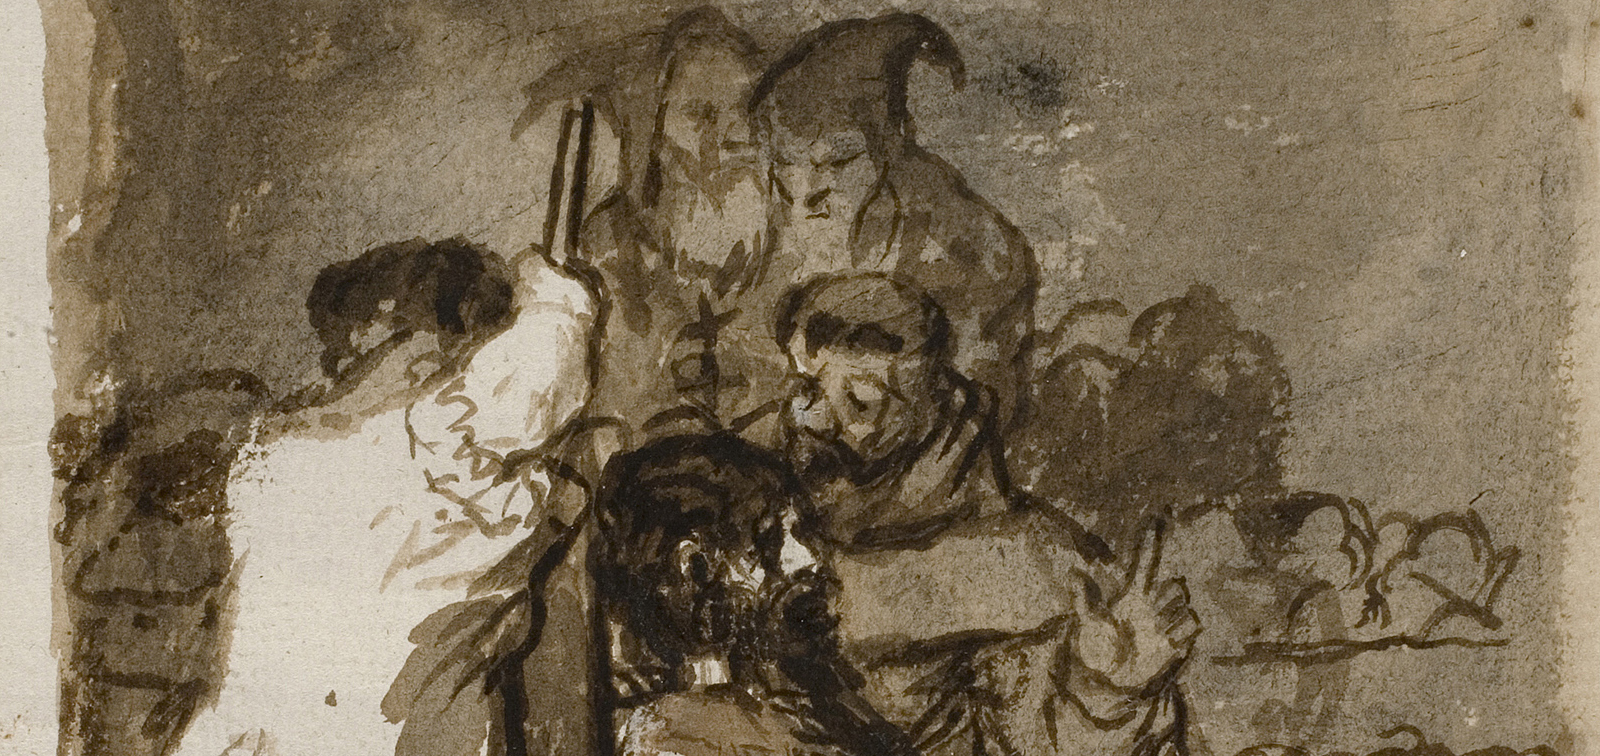 Instalación temporal: El pensamiento constitucional en la obra de Goya